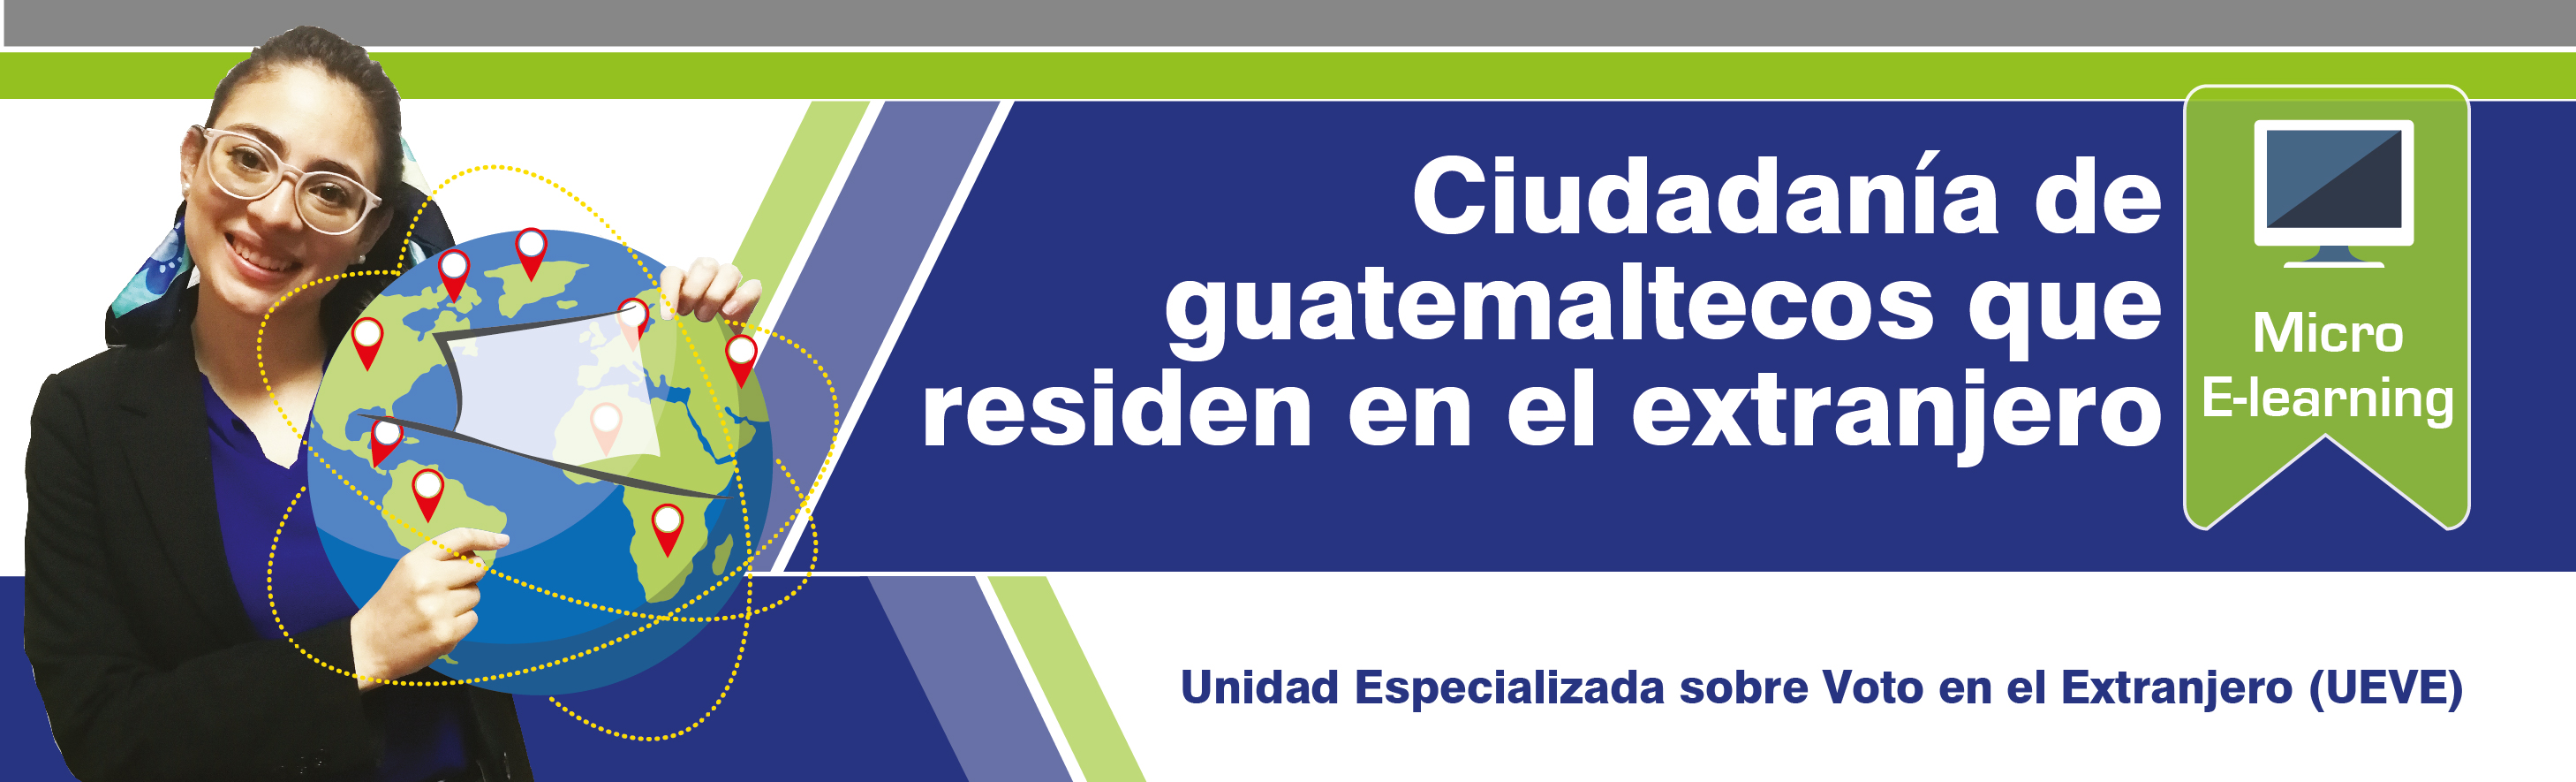 Ciudadanía de guatemaltecos que residen en el extranjero J